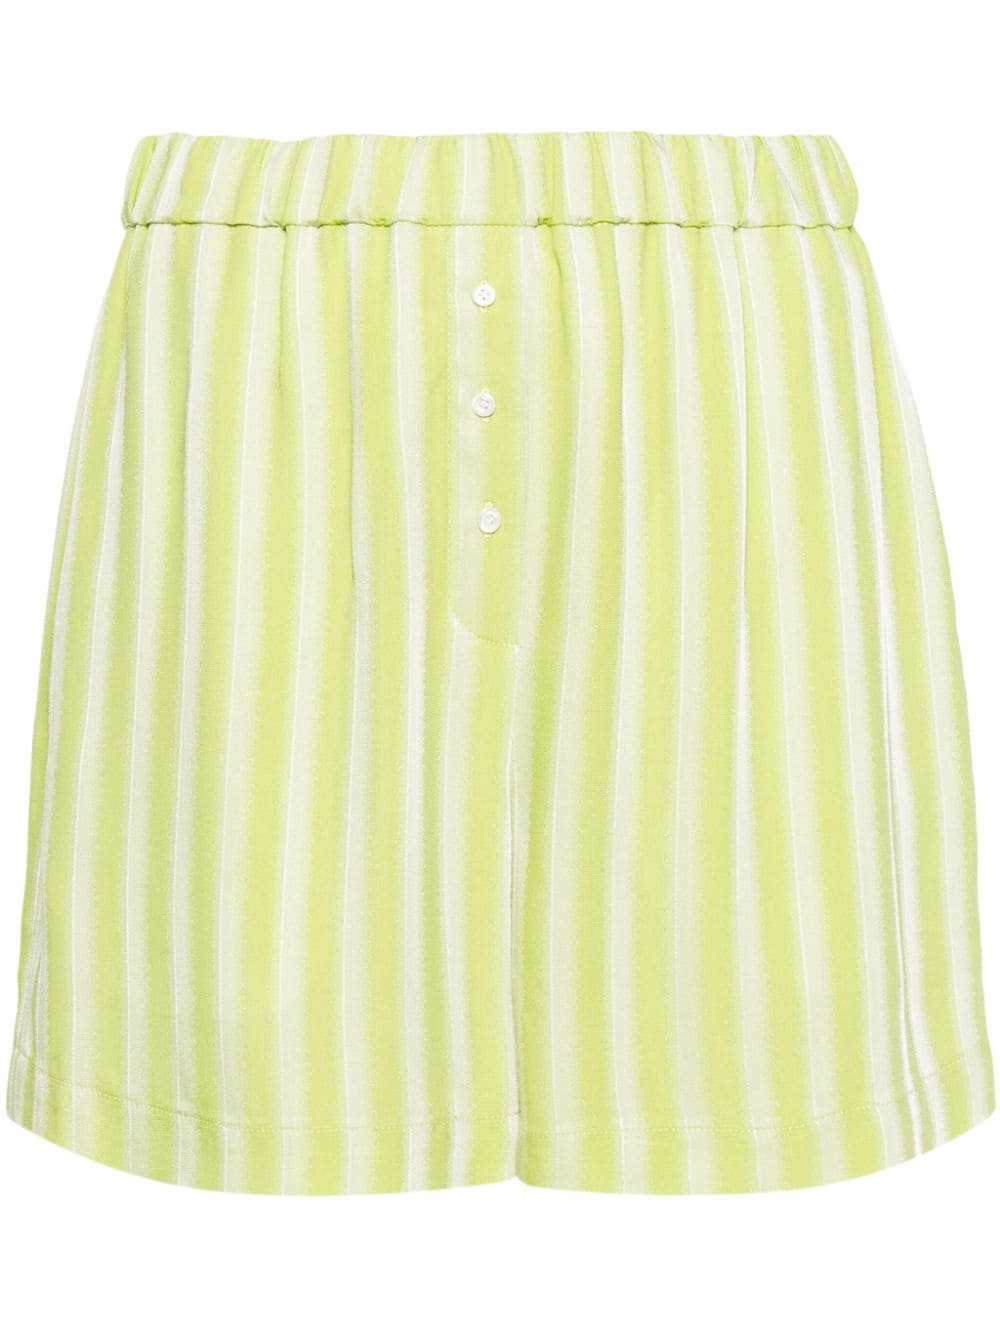 Claudie Pierlot striped satin shorts - Green von Claudie Pierlot